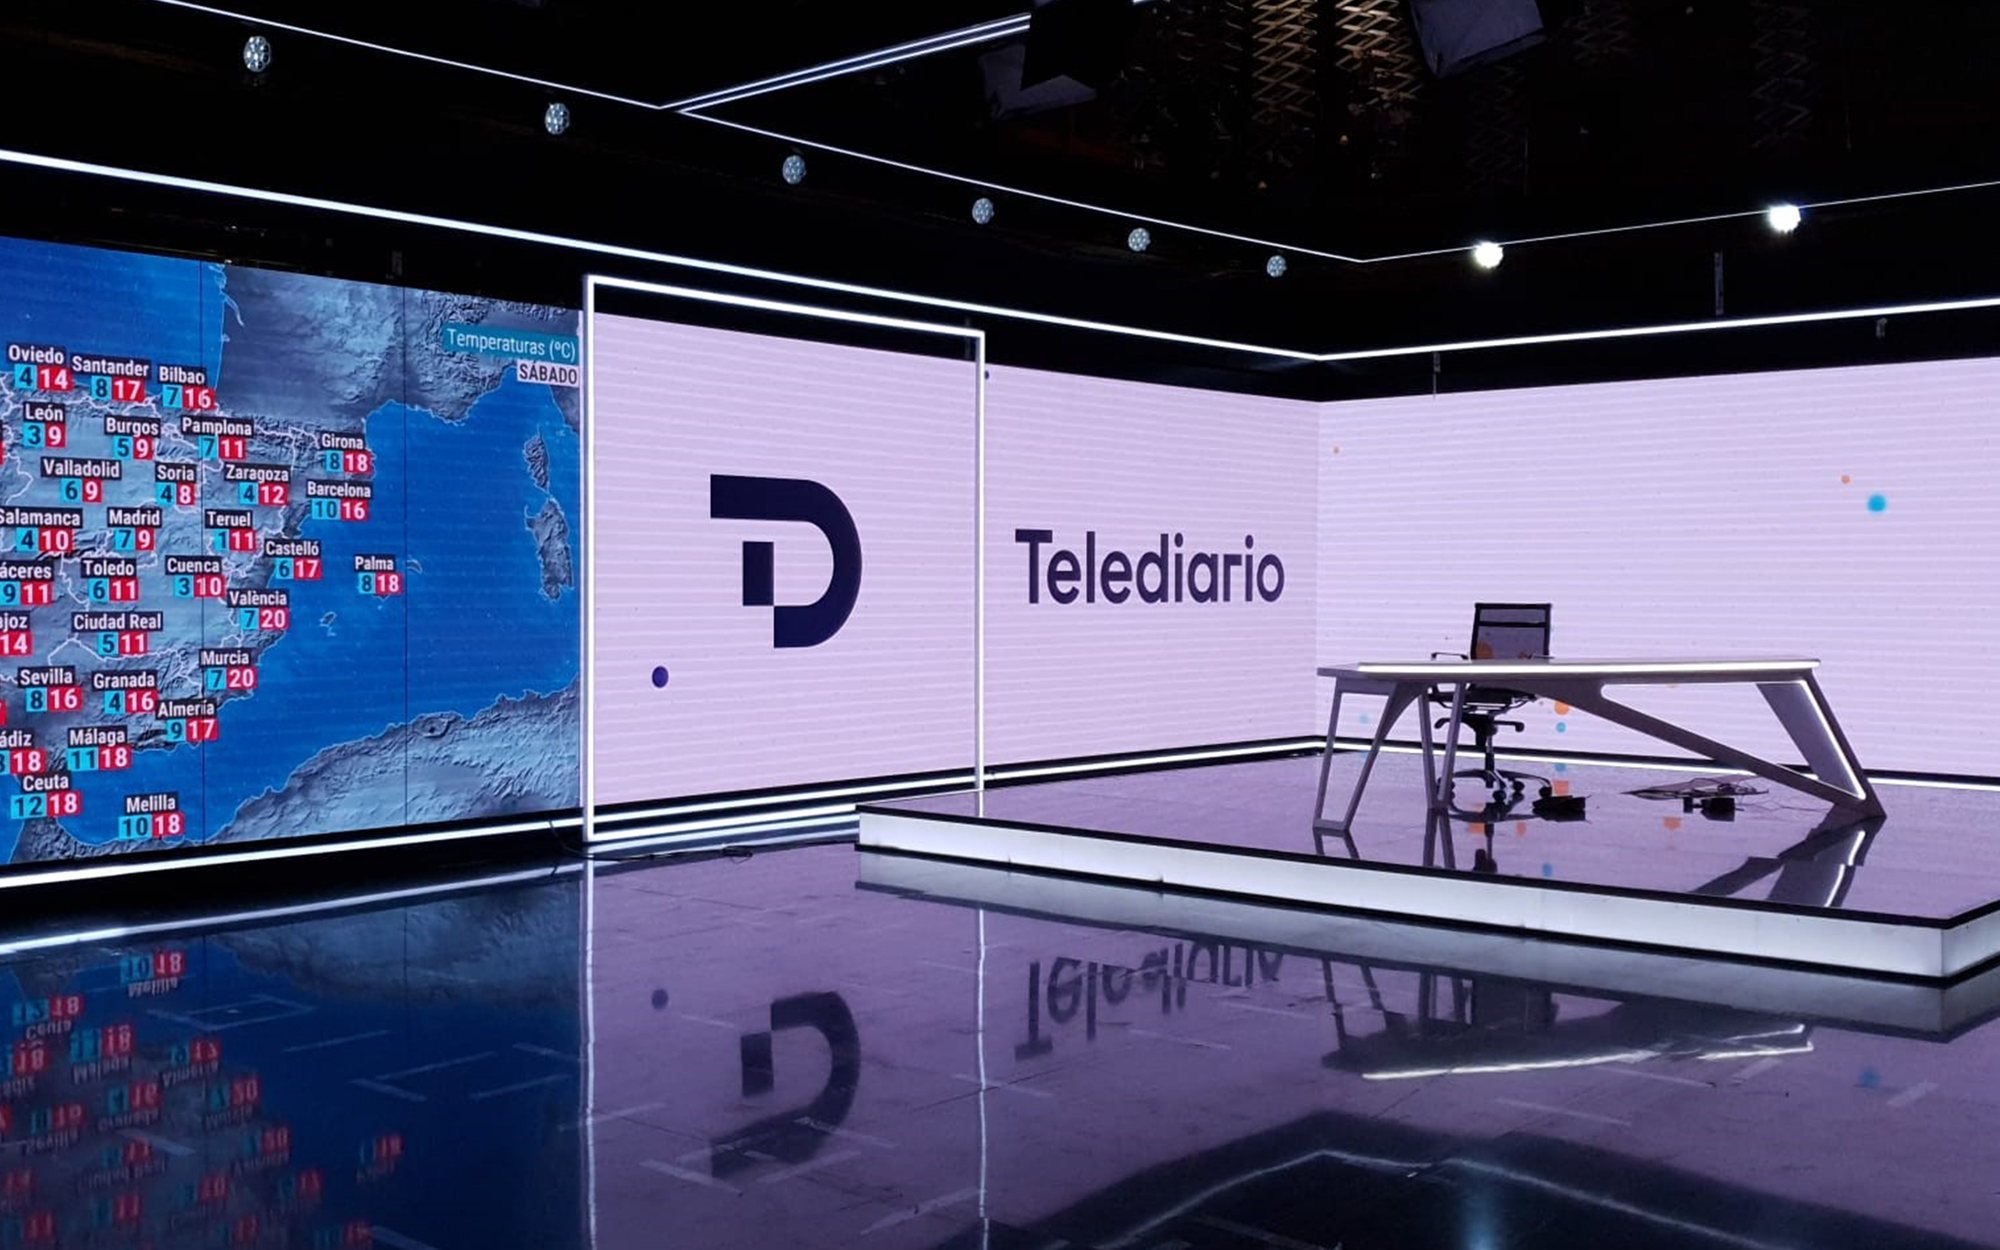 Los 'Telediarios' de TVE estrenan plató y nueva imagen el 11 de enero